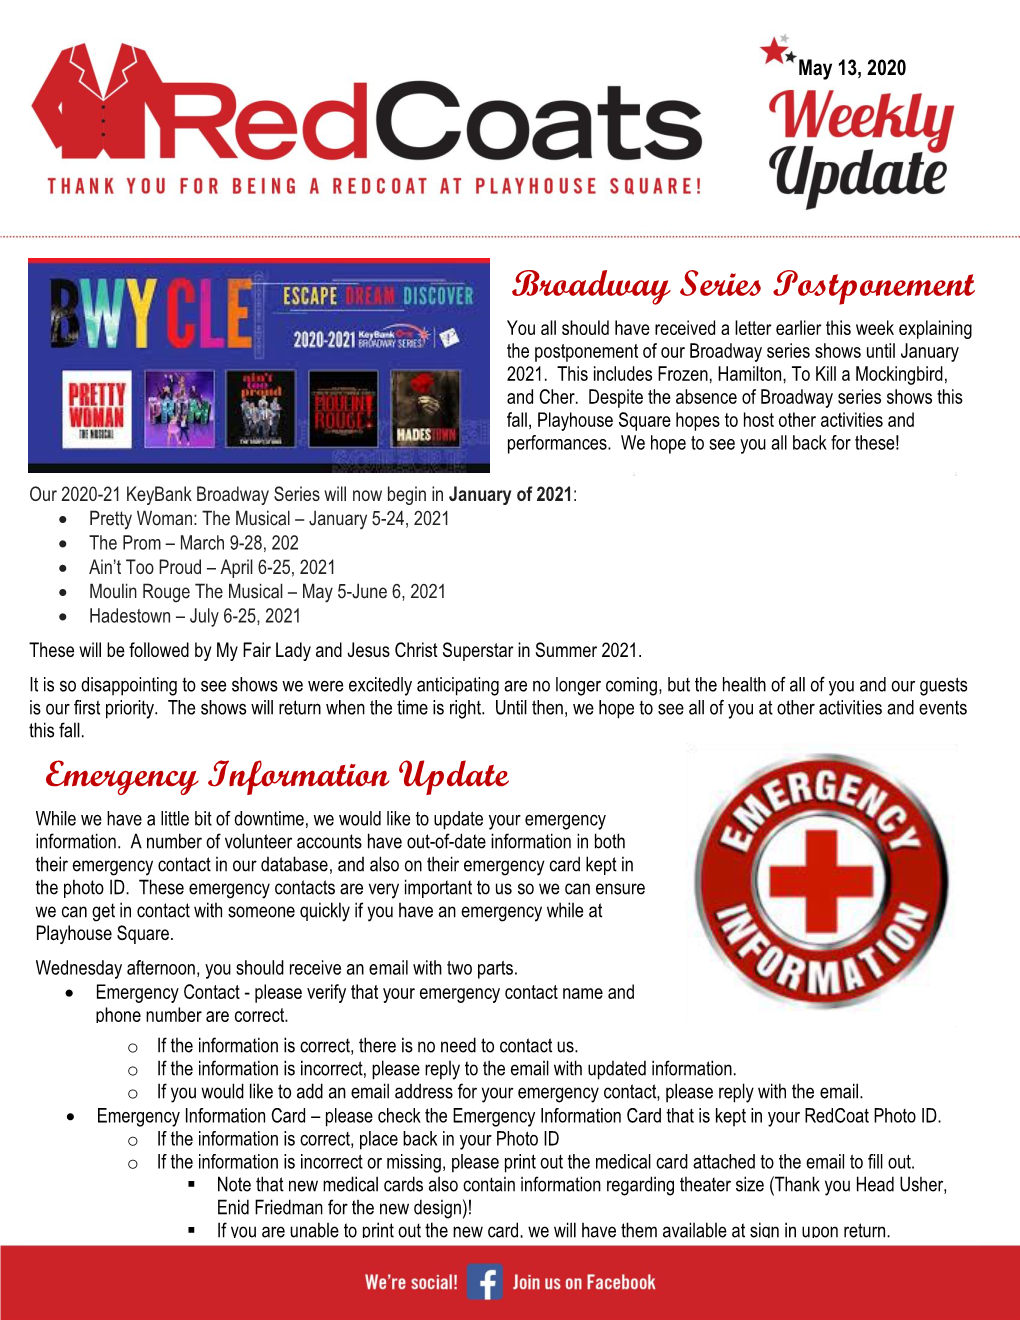 Broadway Series Postponement Emergency Information Update